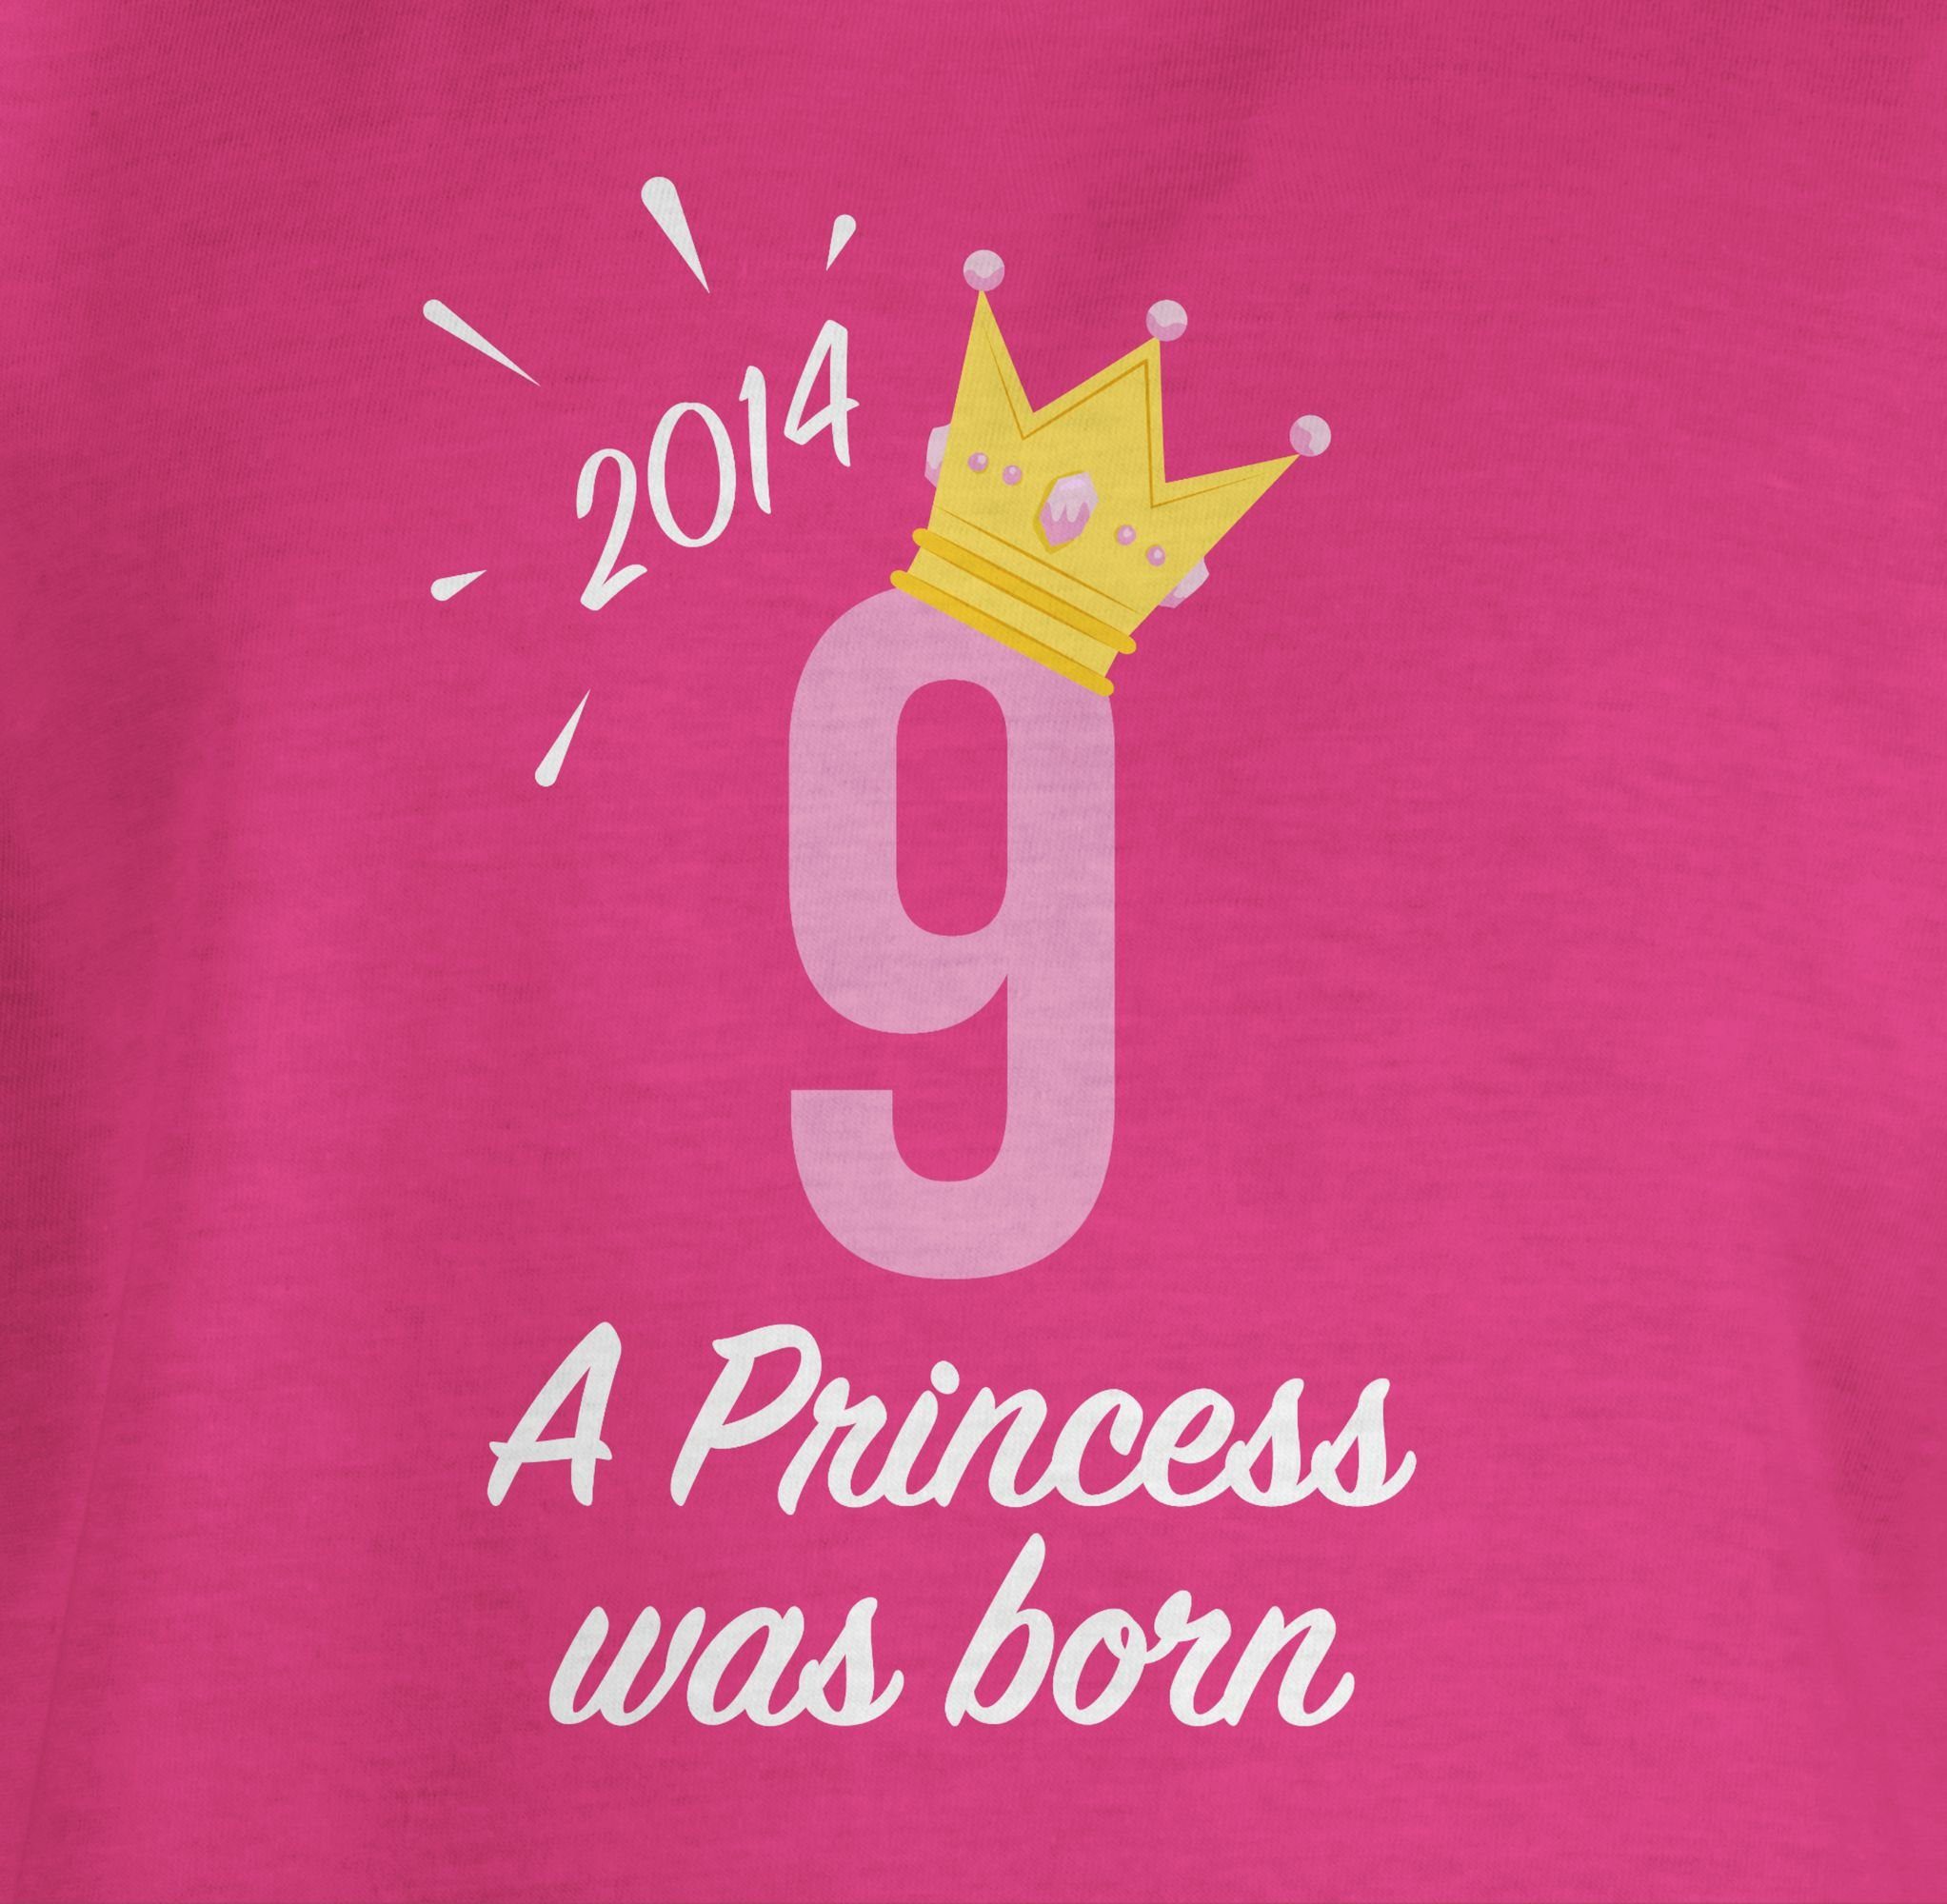 T-Shirt Fuchsia 2 Mädchen 9. Princess Geburtstag 2014 Shirtracer Neunter